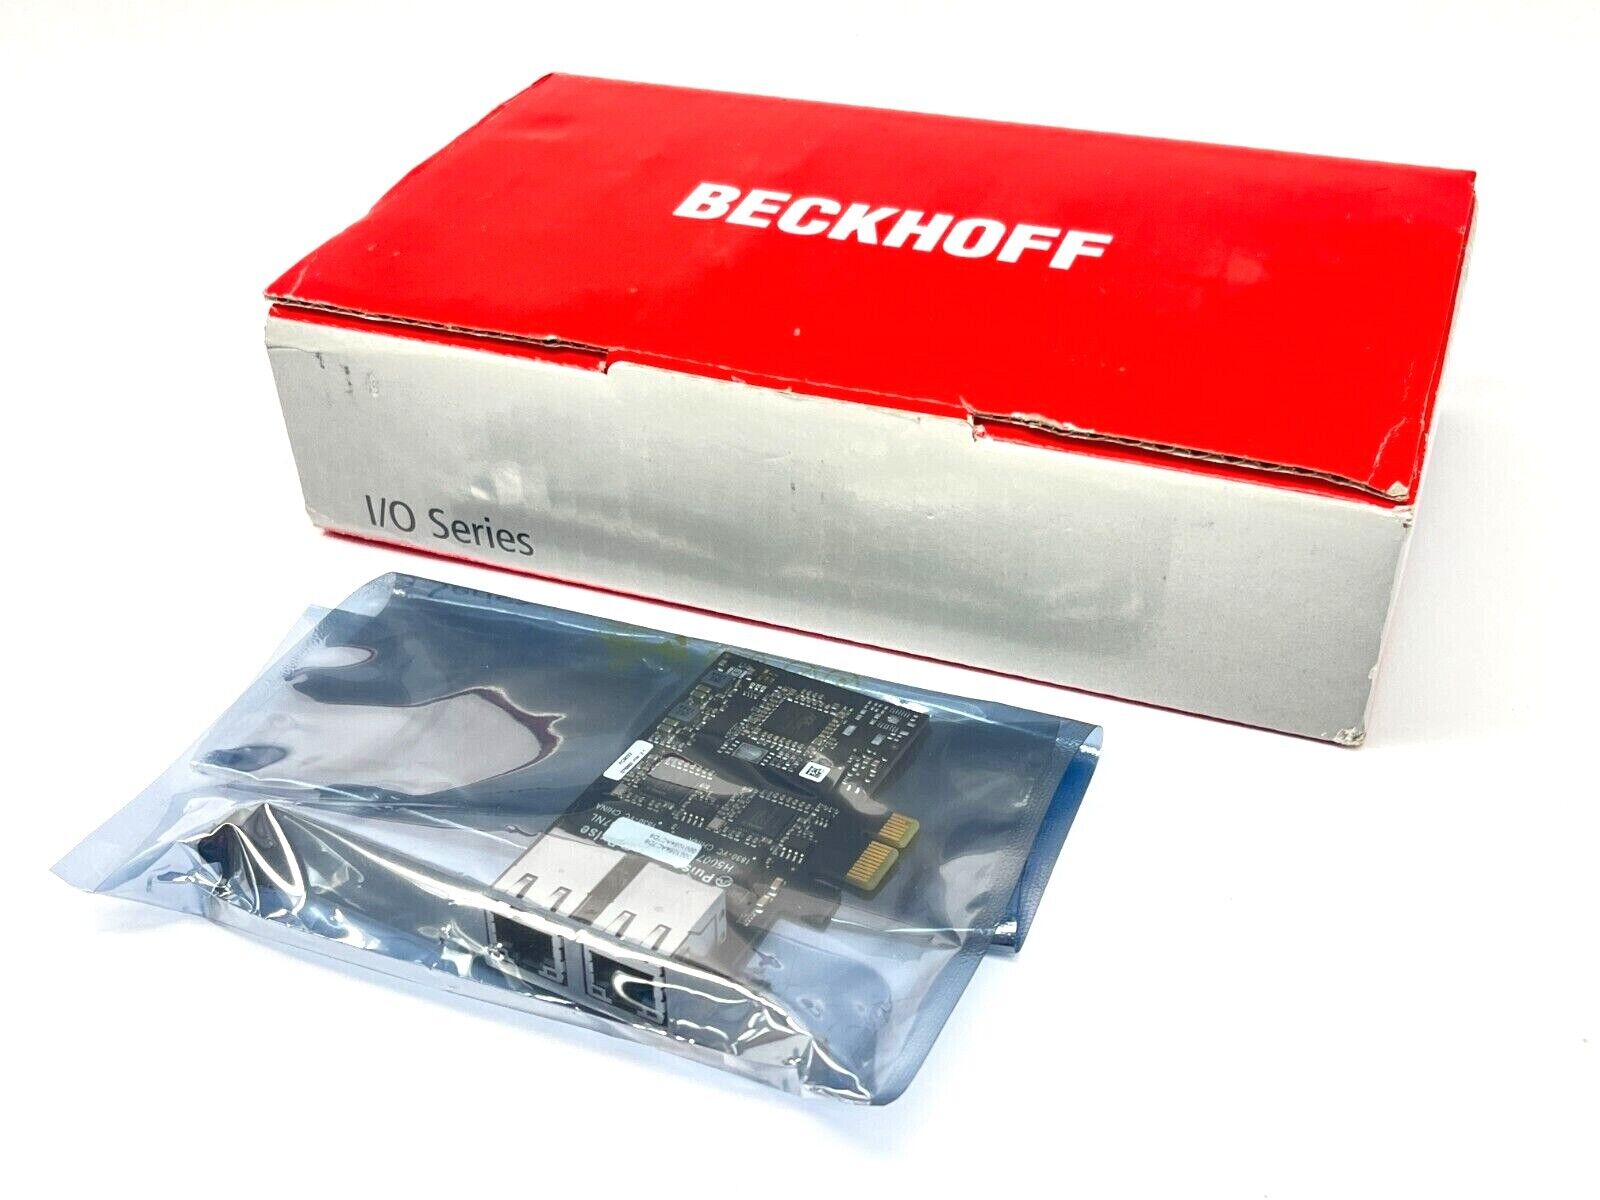 Beckhoff FC9022 Gigabit Ethernet Card 2 Channels